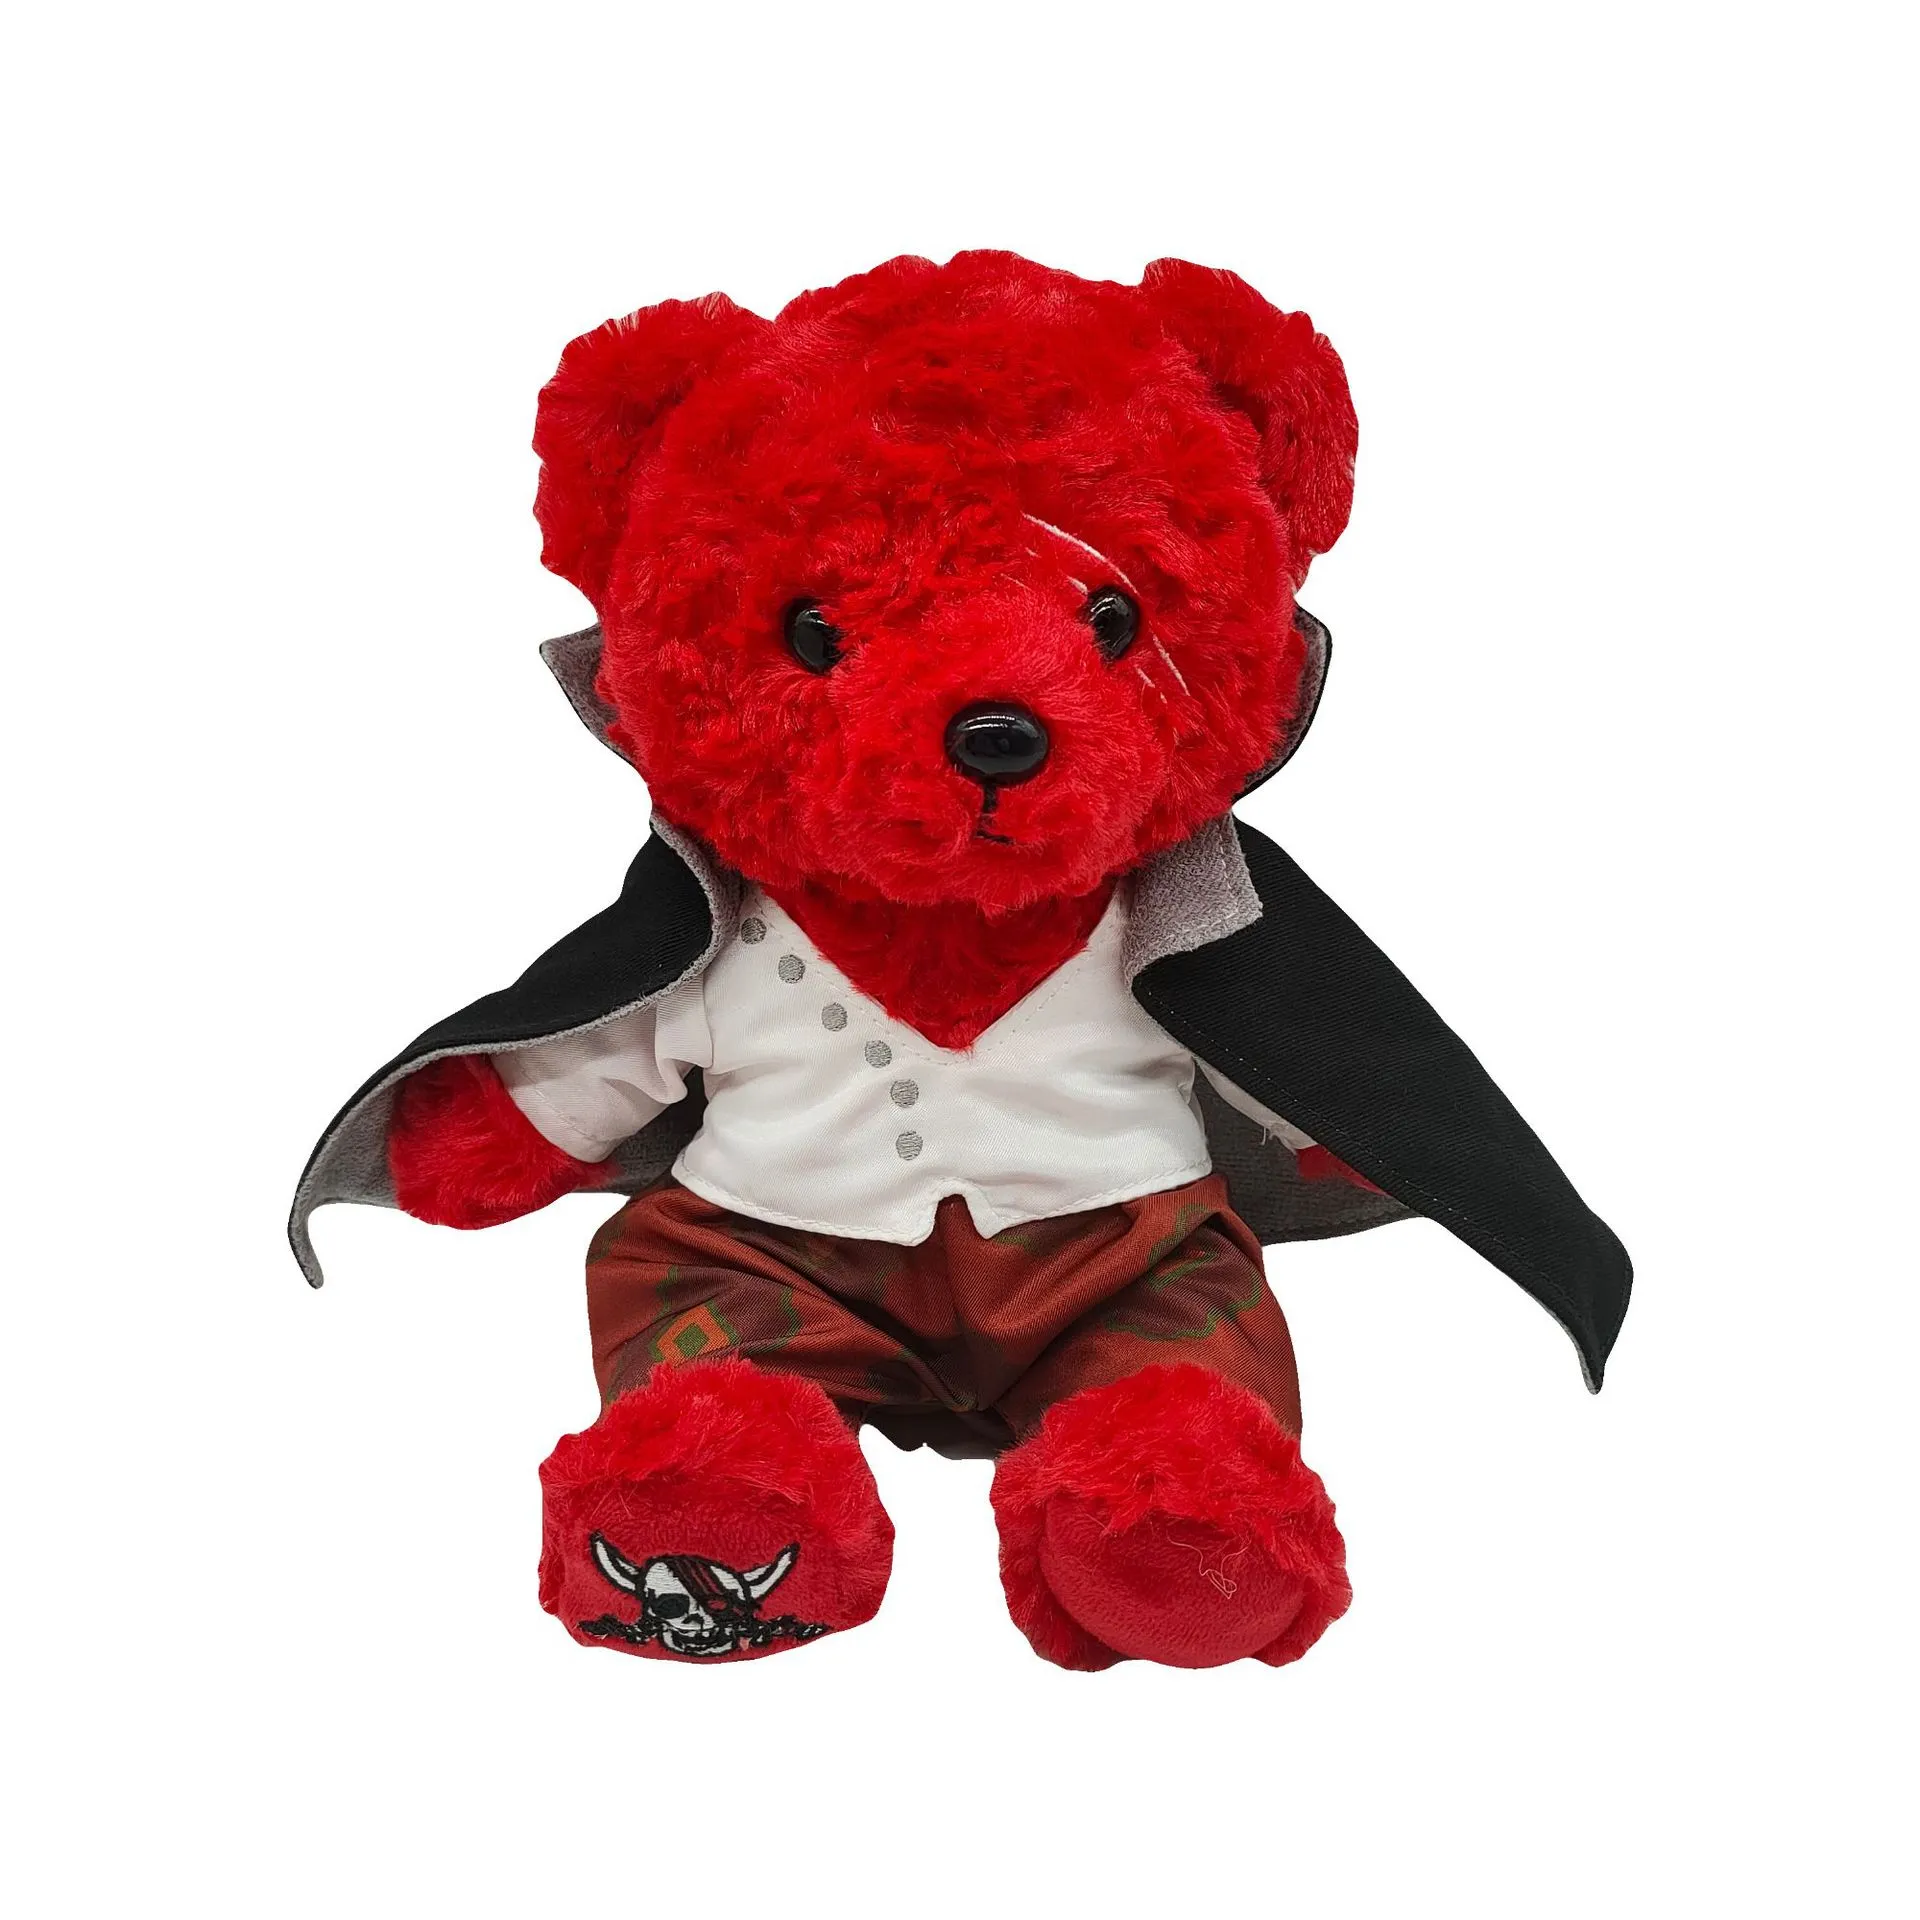 ヨルタブ黒いケープの漫画のキャラクターの赤いクマは子供や女の子の家の装飾に最適な贈り物